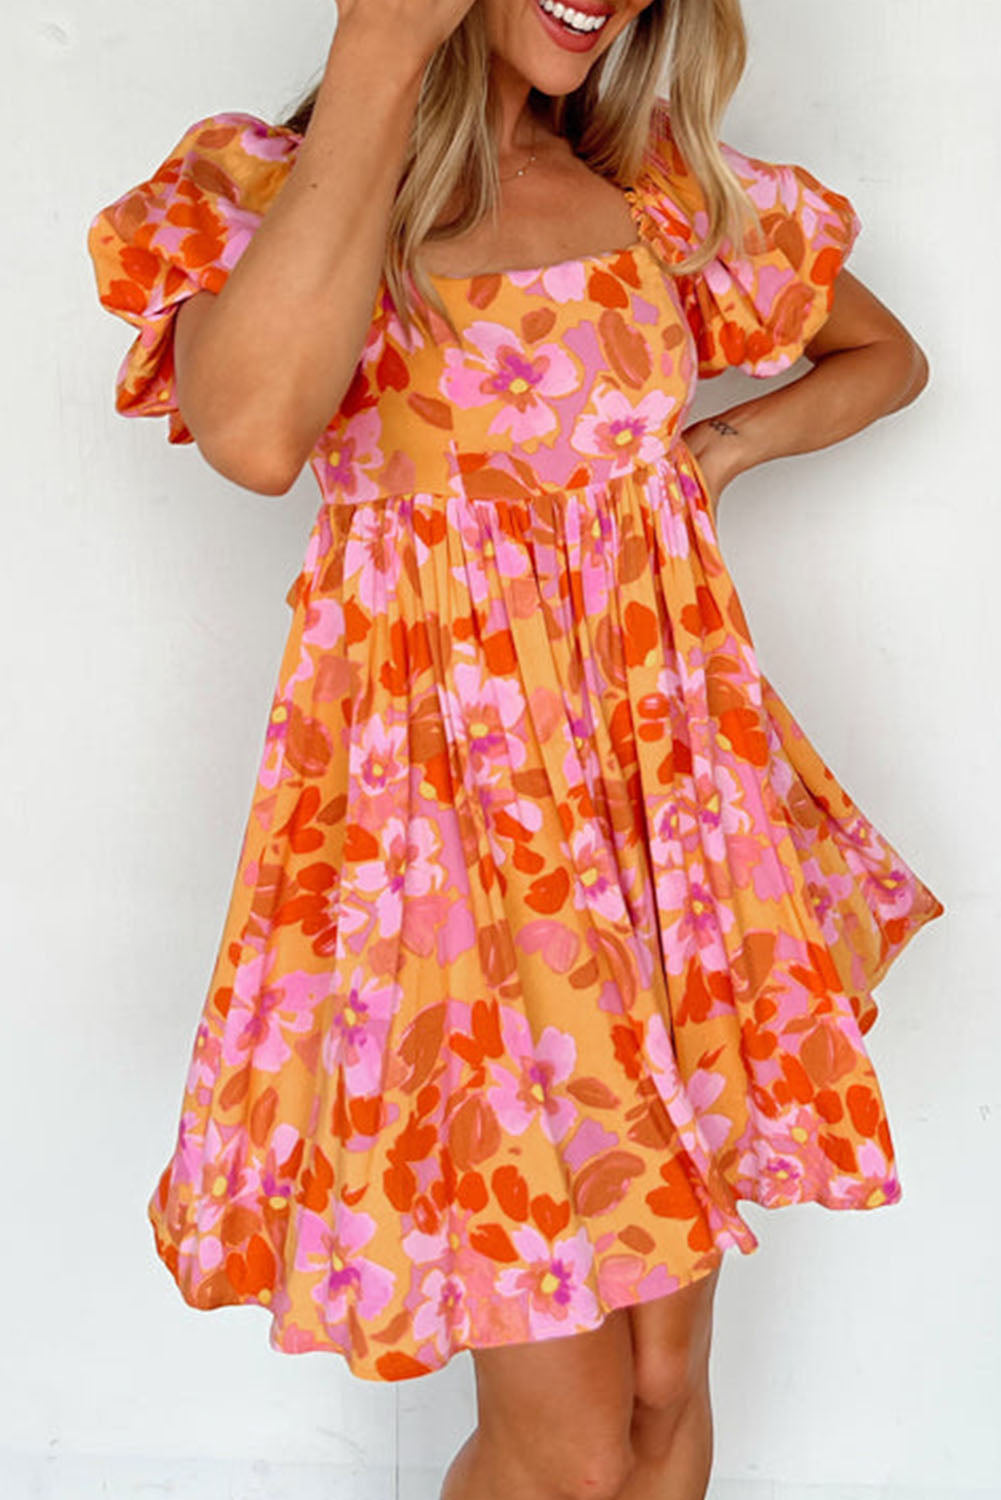 Riya - Super Stylisches Kleid in Sommerfarben